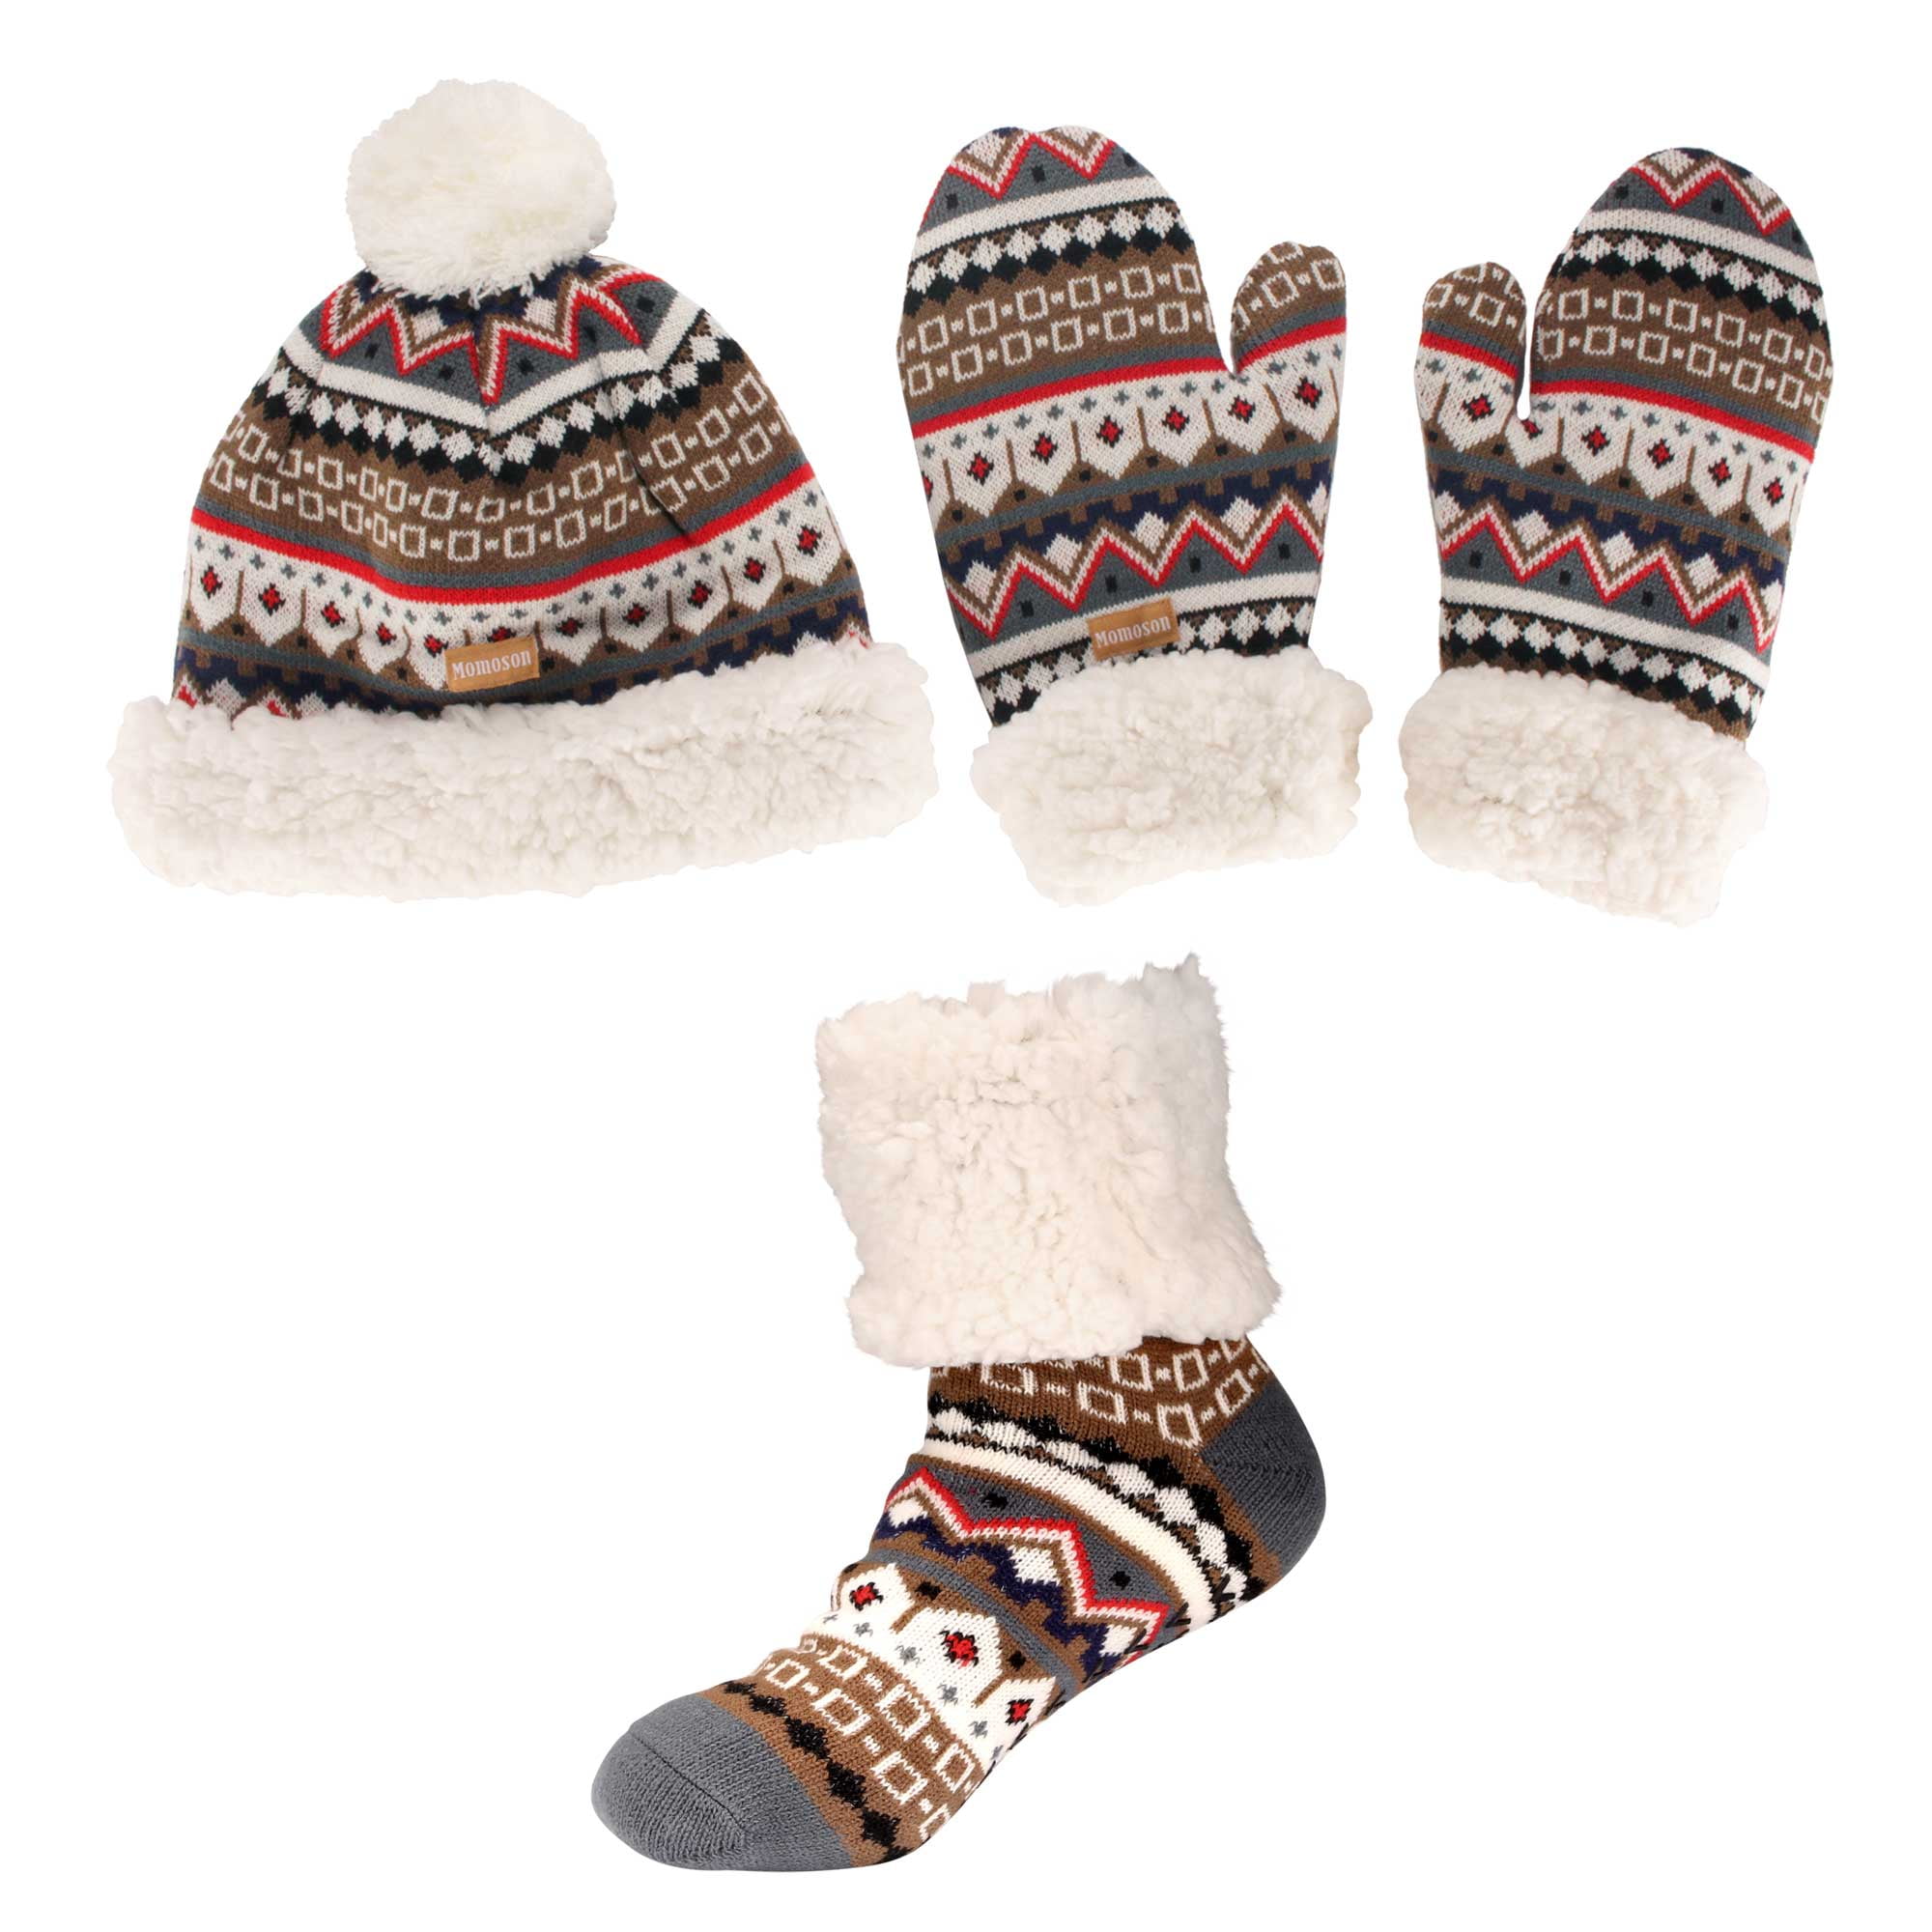 Adult Womens Super Soft Warm Fuzzy Cozy Winter Socks 1 Set Beanie Pom Pom Hat and Mittens Set 